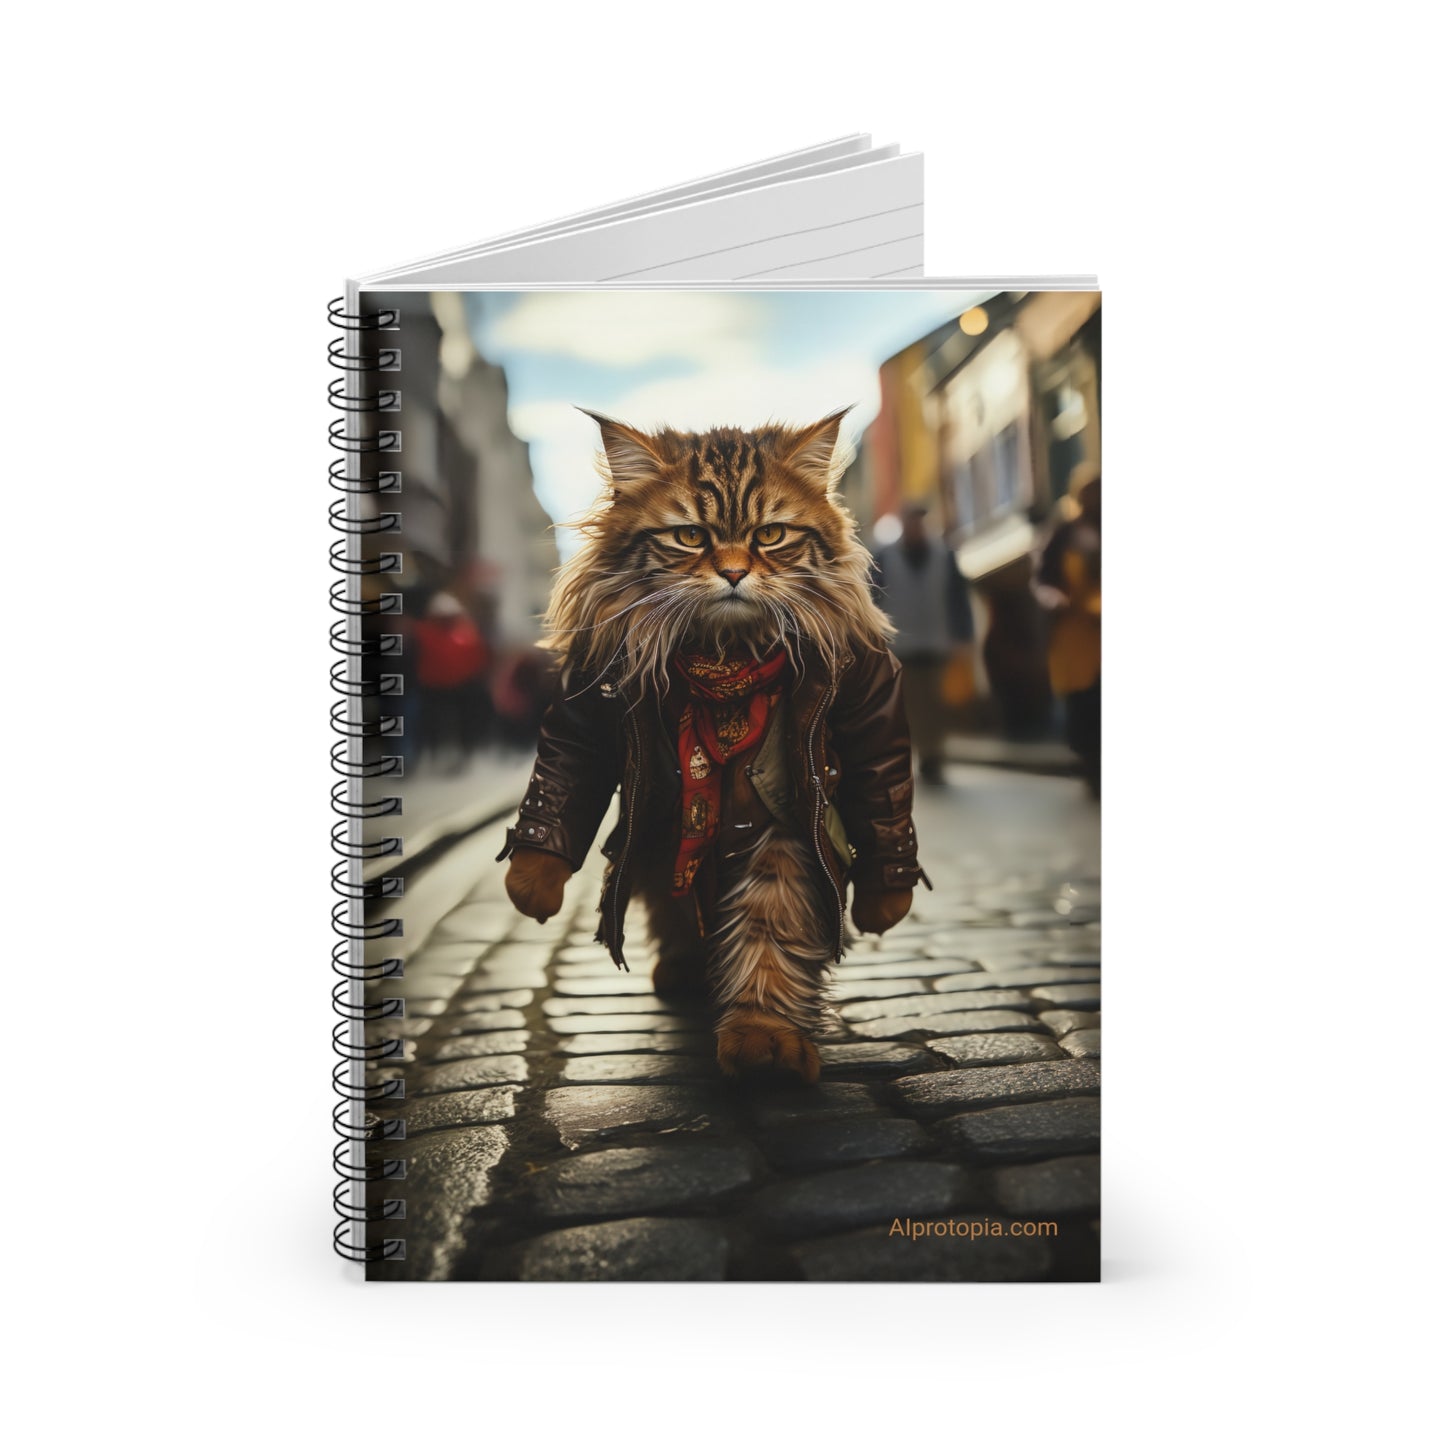 Spiral Notebook - Ruled Line. Hippy Cat. Cats. AI art.